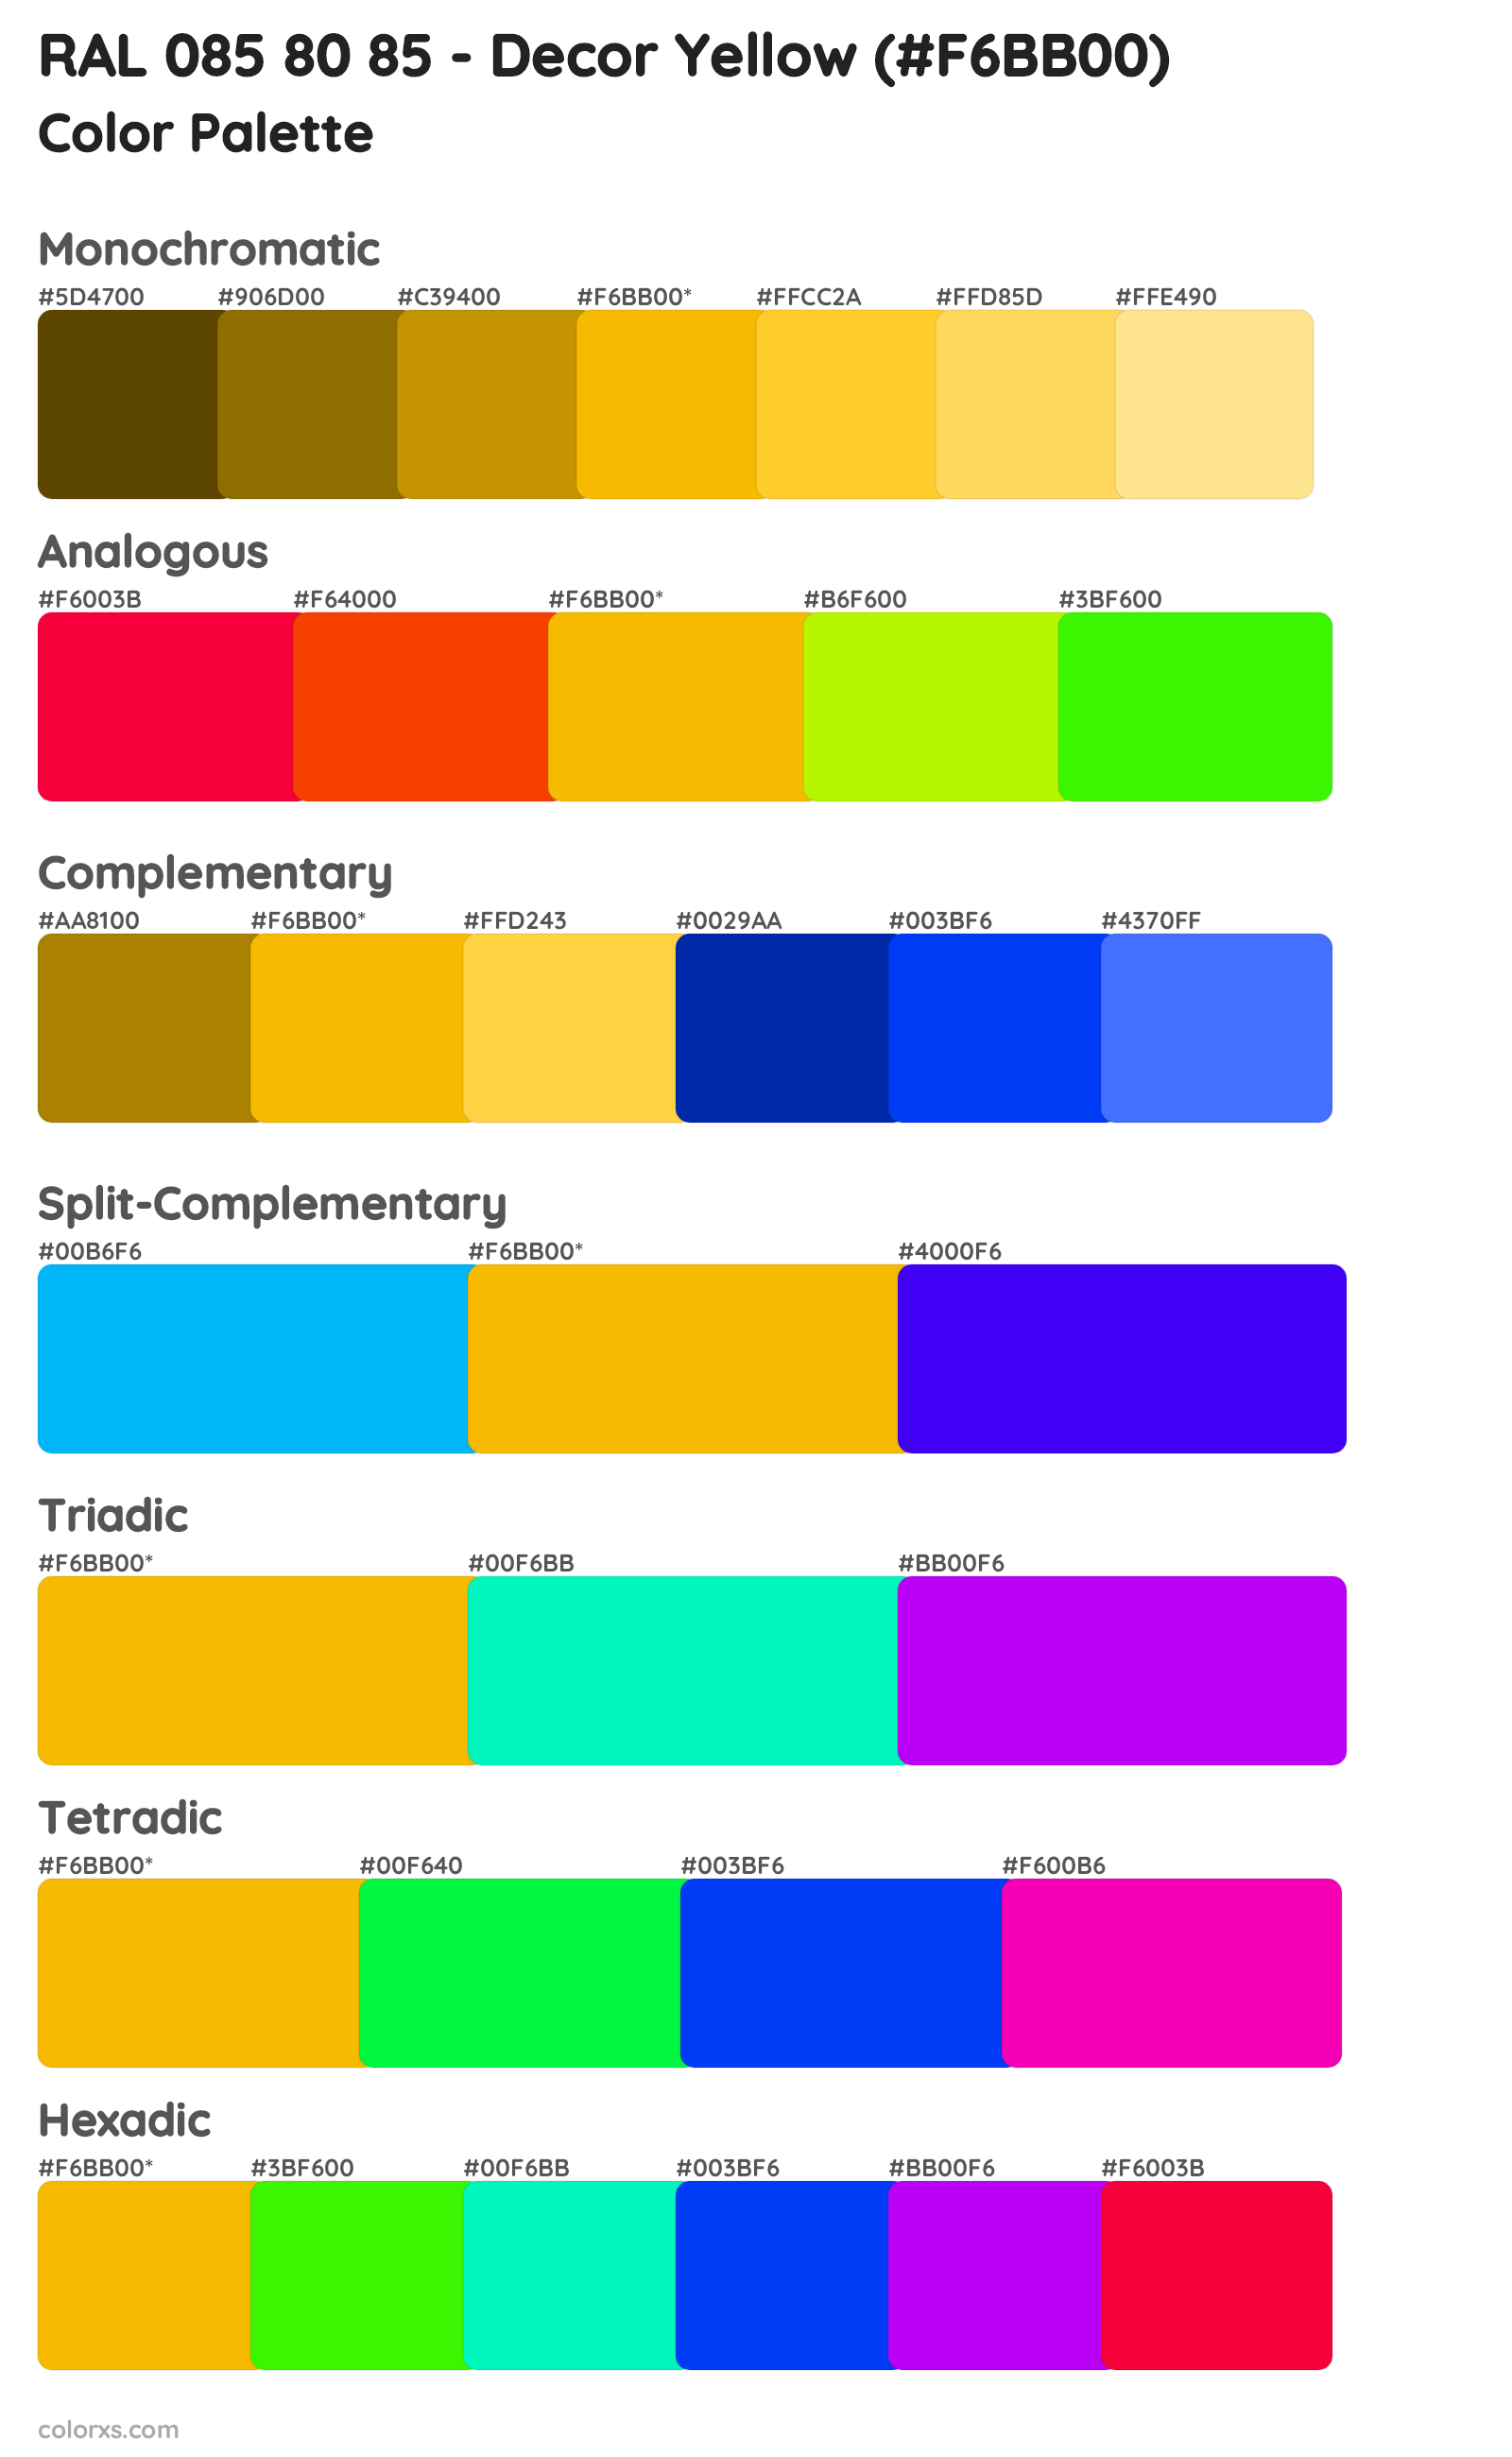 RAL 085 80 85 - Decor Yellow Color Scheme Palettes